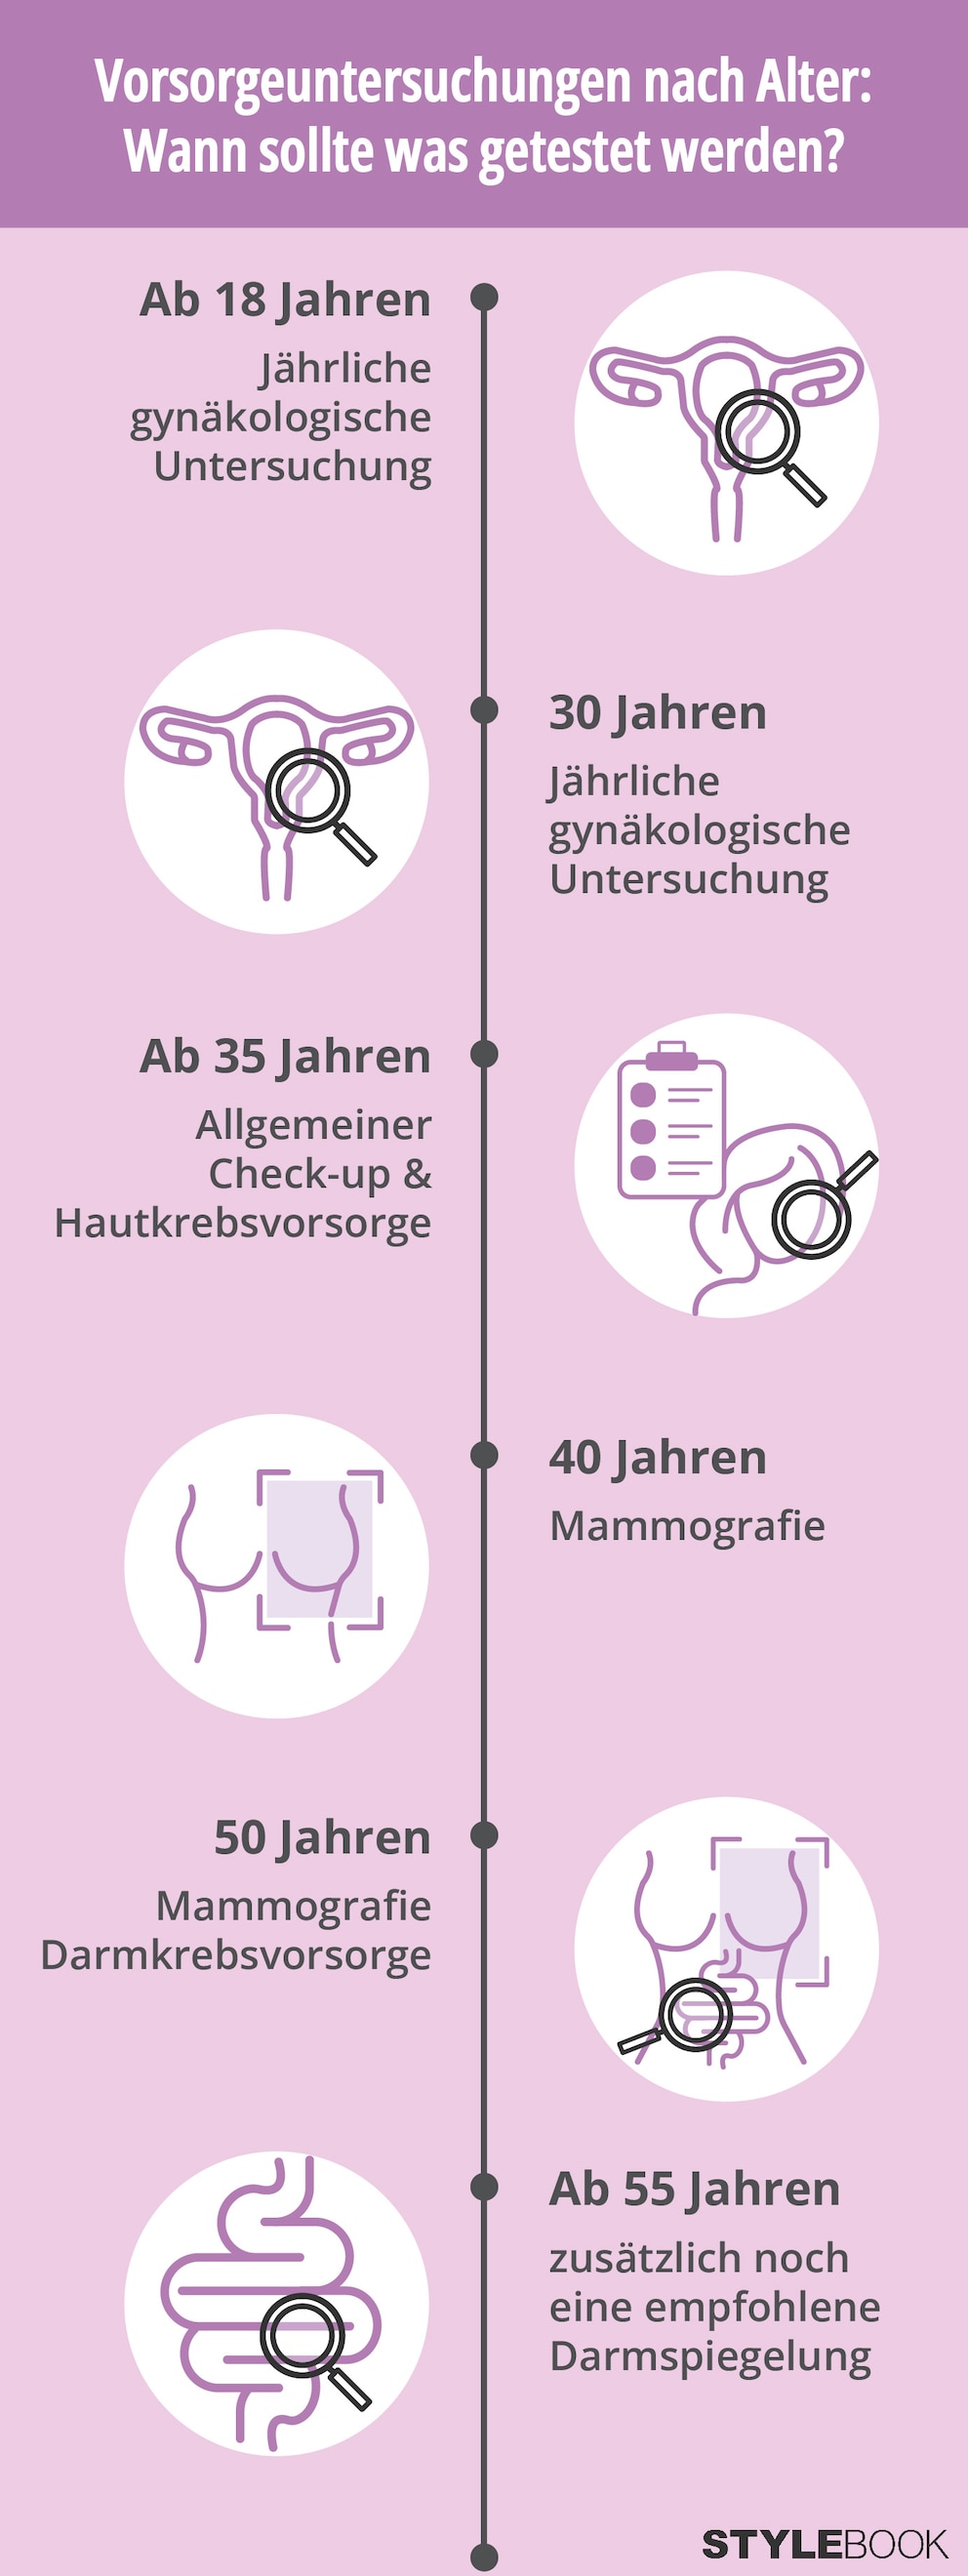 Diese Vorsorgeuntersuchungen werden in Deutschland für Frauen von der Krankenkasse angeboten